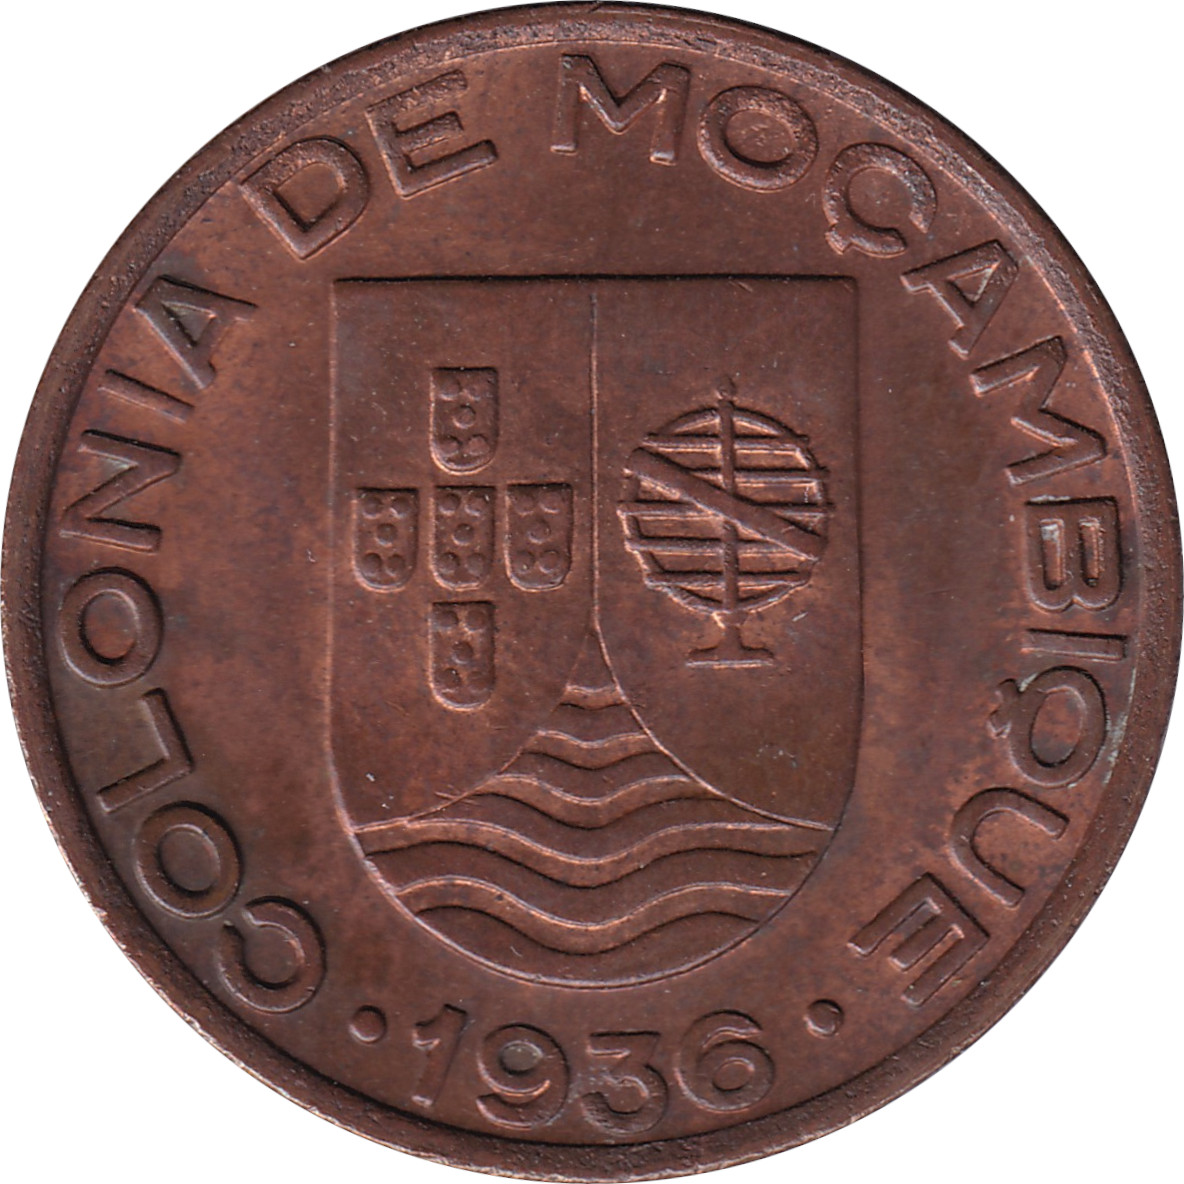 20 centavos - Colonia de Mocambique - Grand blason